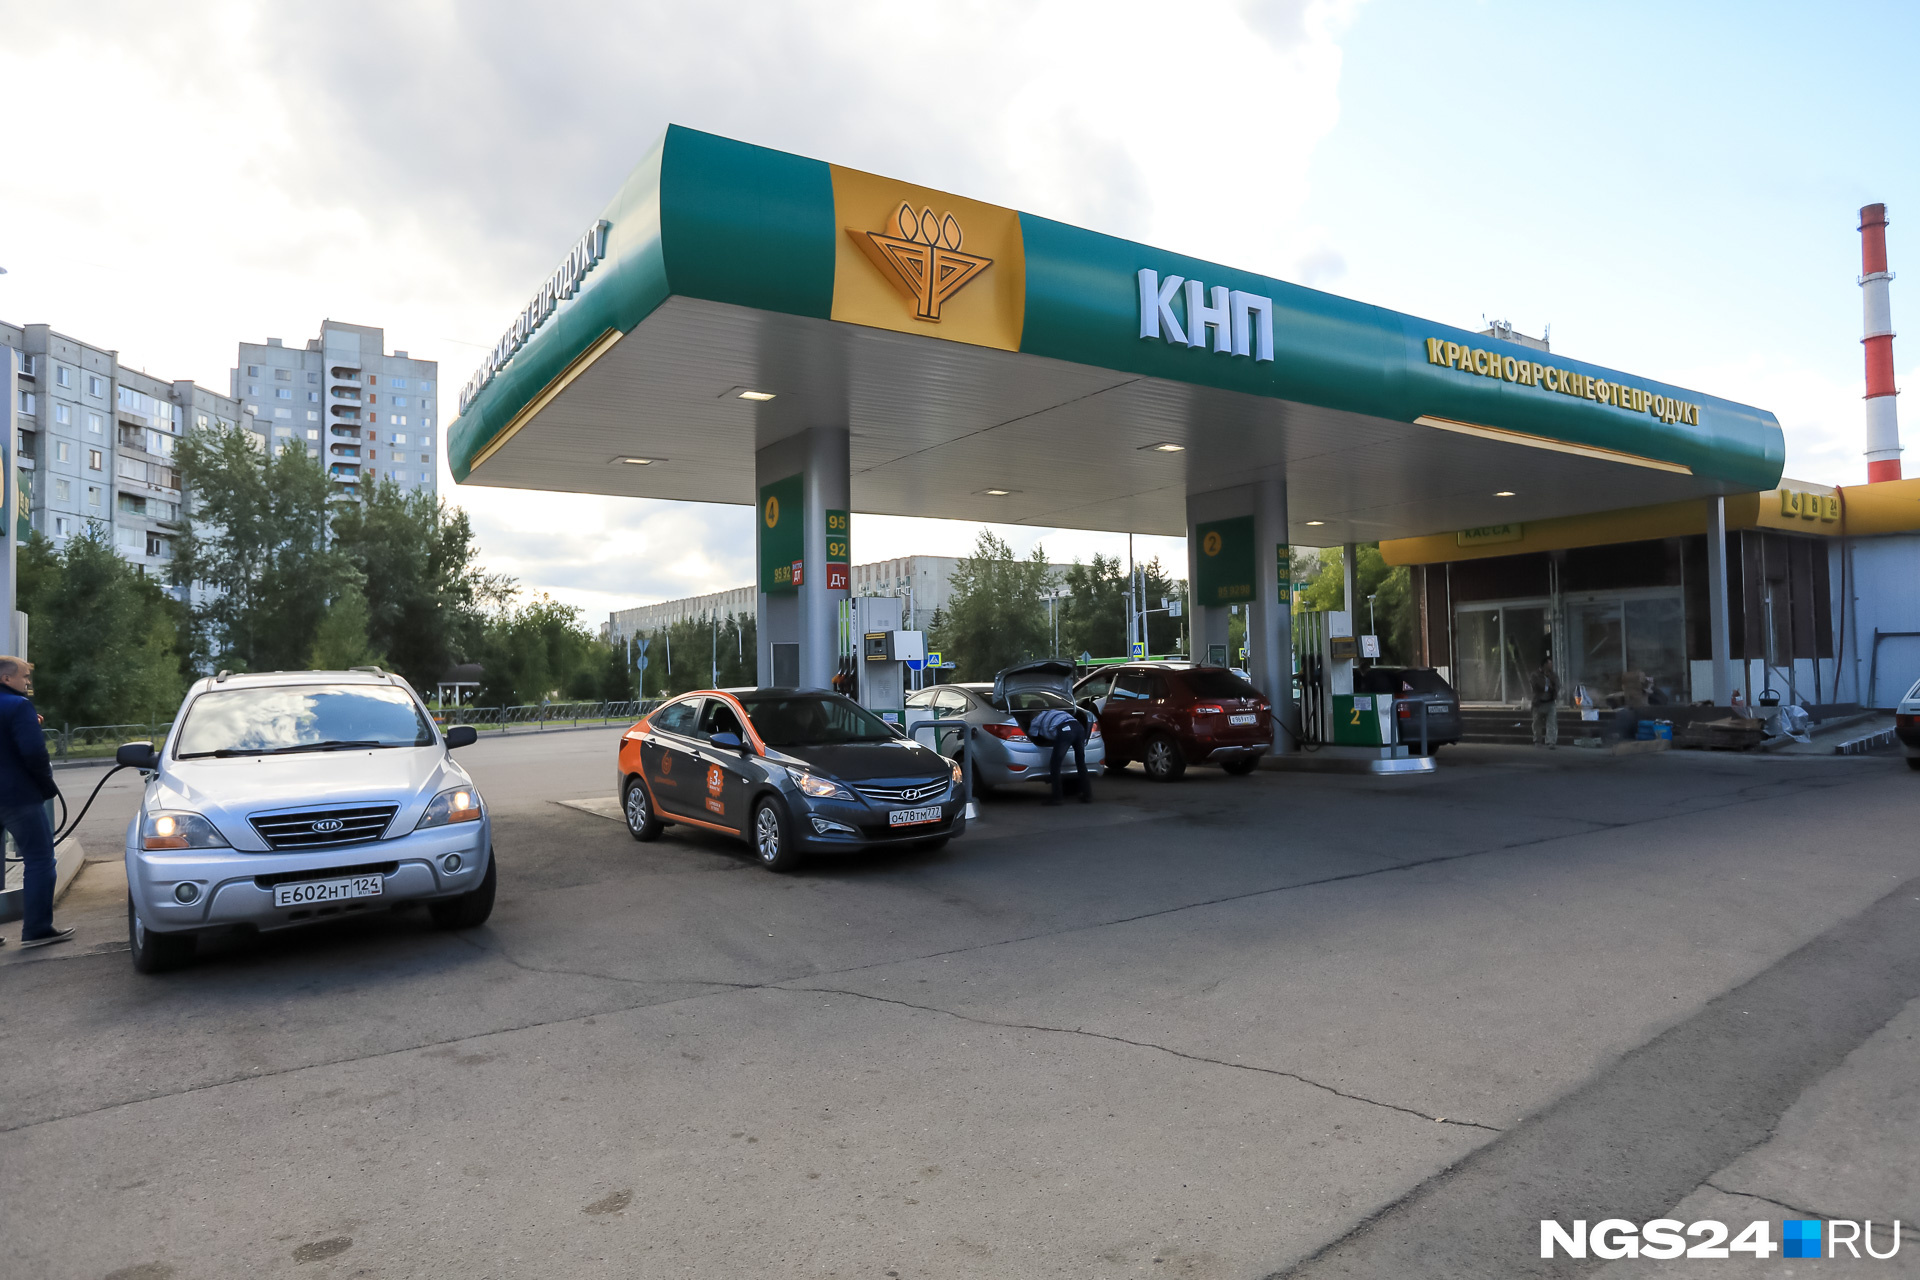 «Ценник стали гнуть»: в Красноярске снова подорожал бензин. Где заправляться дешевле всего?